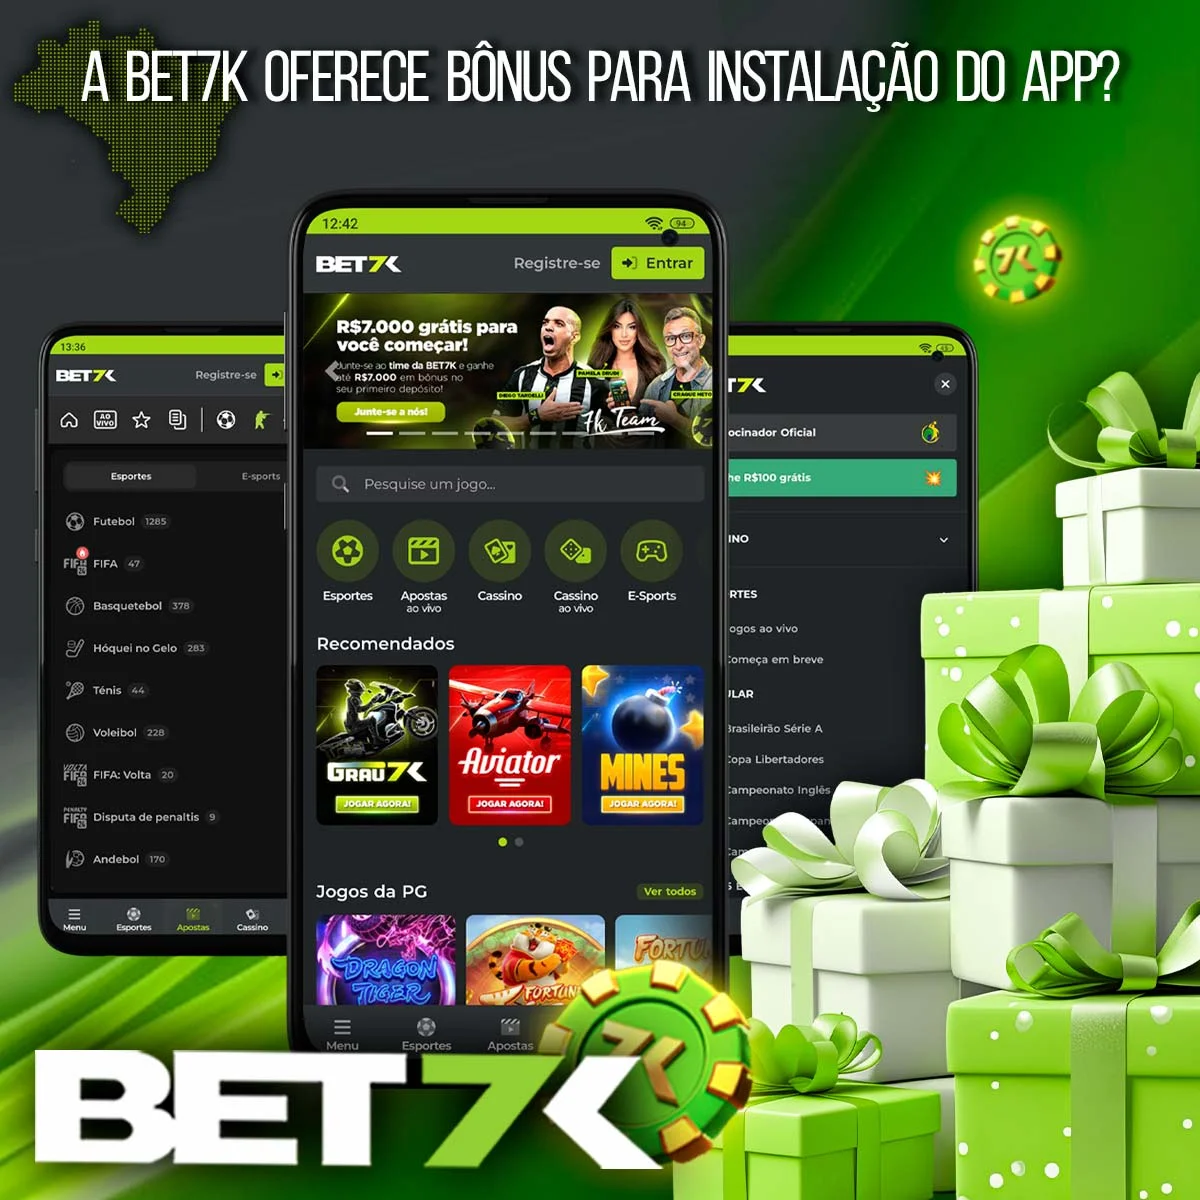 Aplicação de bônus para apostas esportivas e cassino online no aplicativo móvel Bet7k.